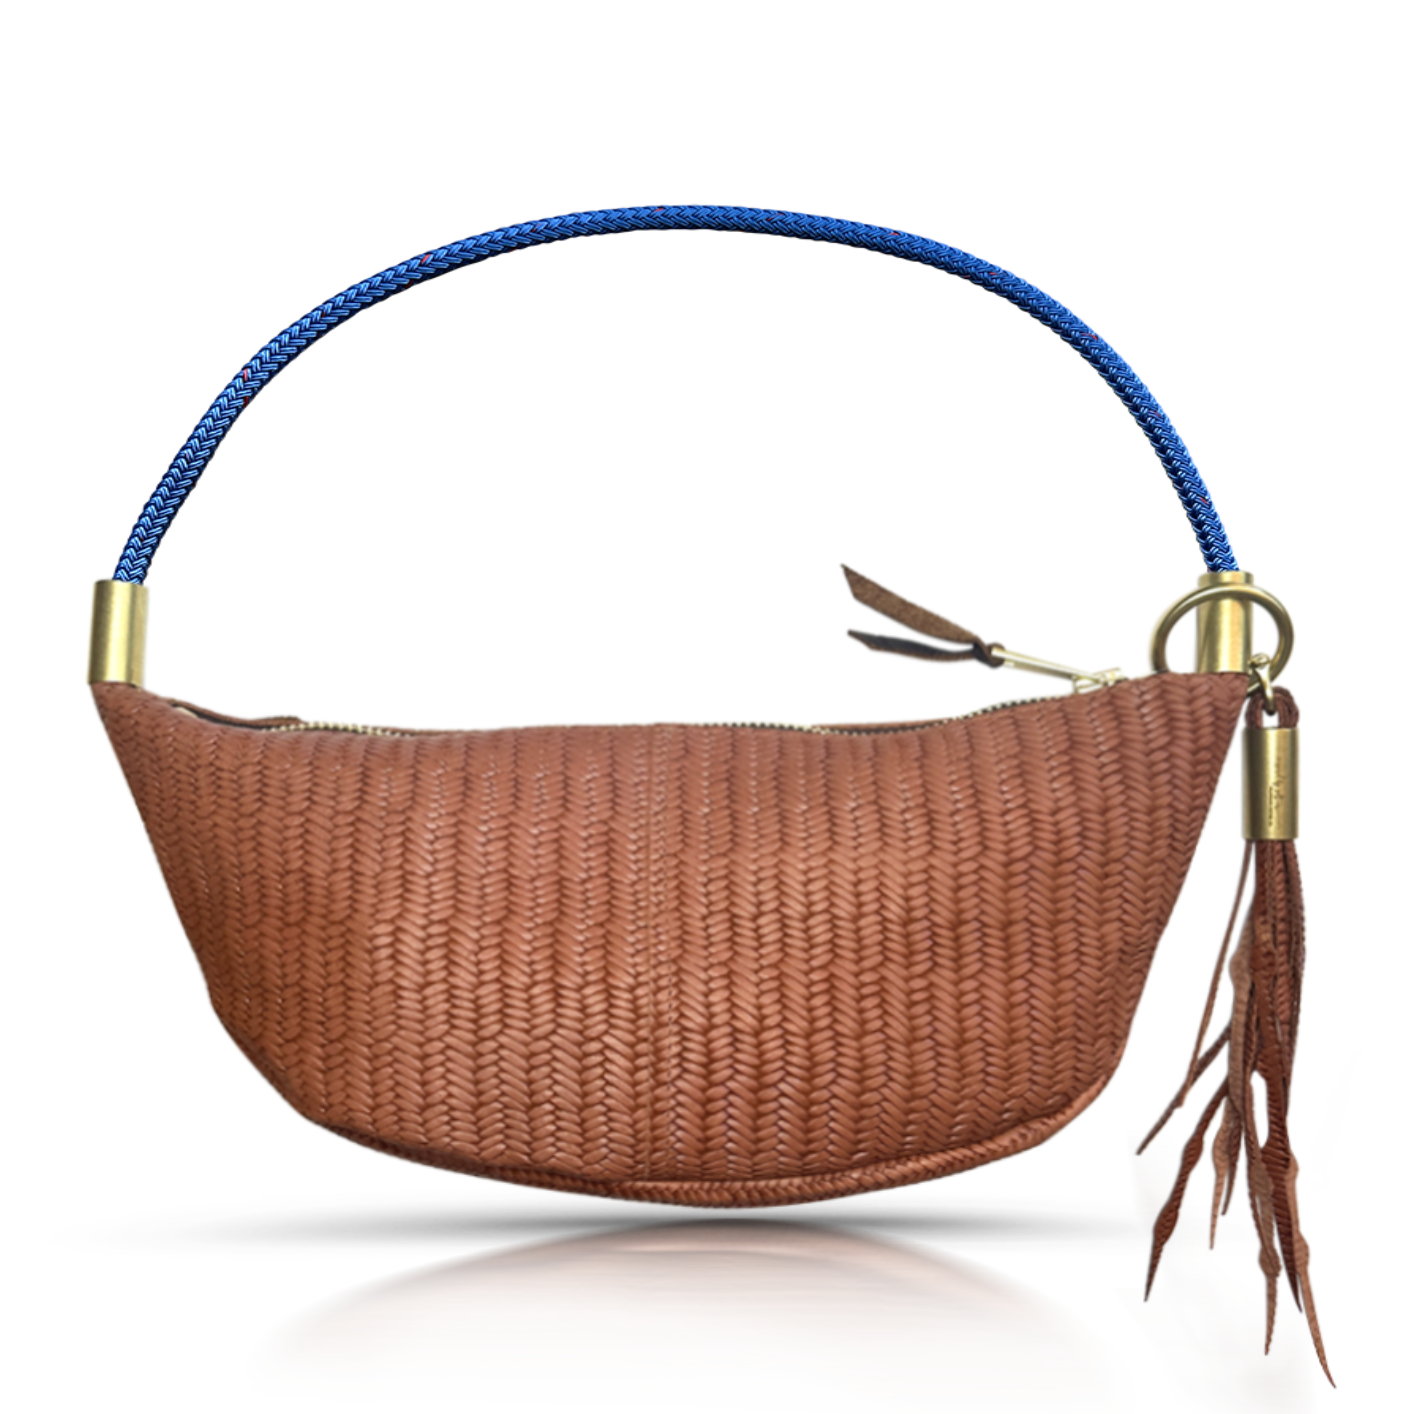 brown basketweave sling bag with harborside blue dock line handle